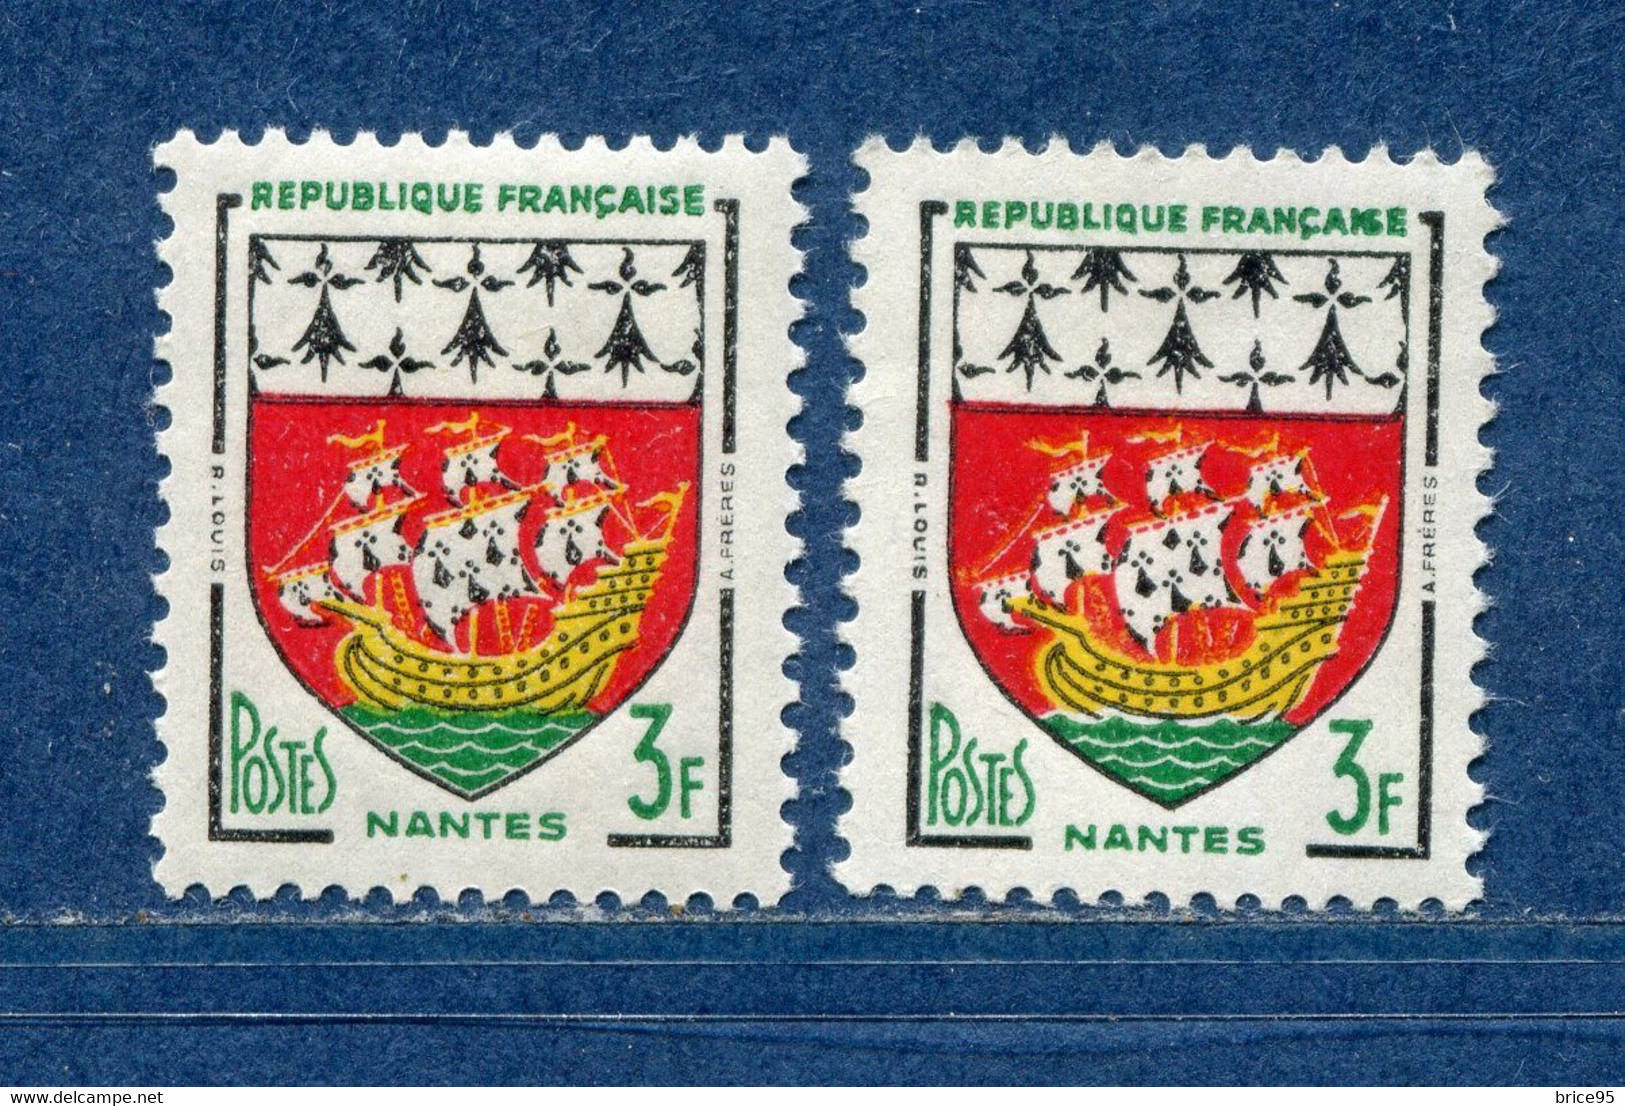 ⭐ France - Variété - YT N° 1185 - Couleurs - Pétouilles - Neuf Sans Charnière - 1958 ⭐ - Nuevos